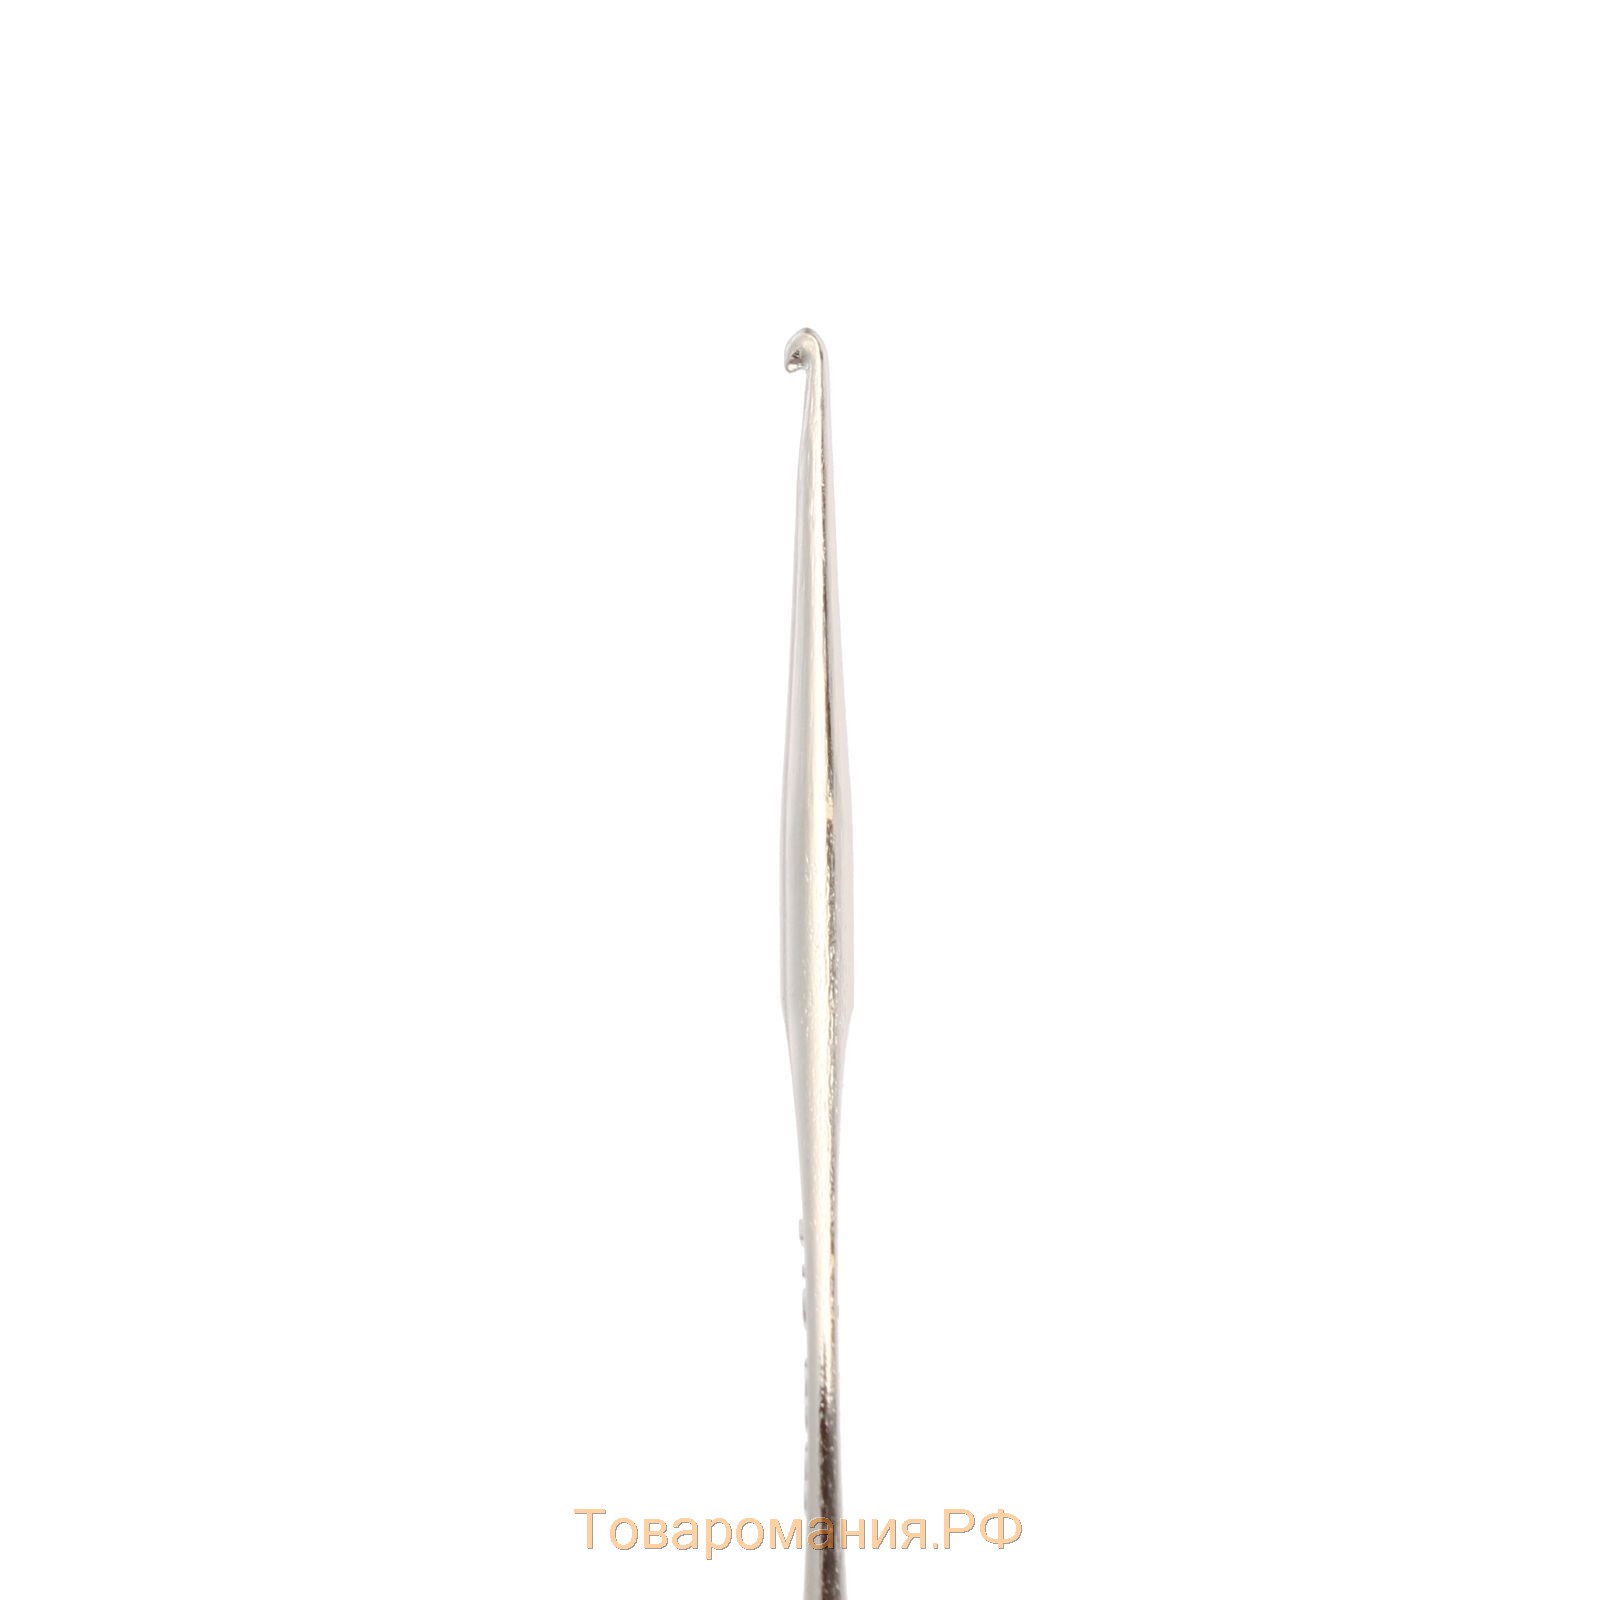 Набор крючков для вязания, d = 0,5-1 мм, 12 см, 6 шт